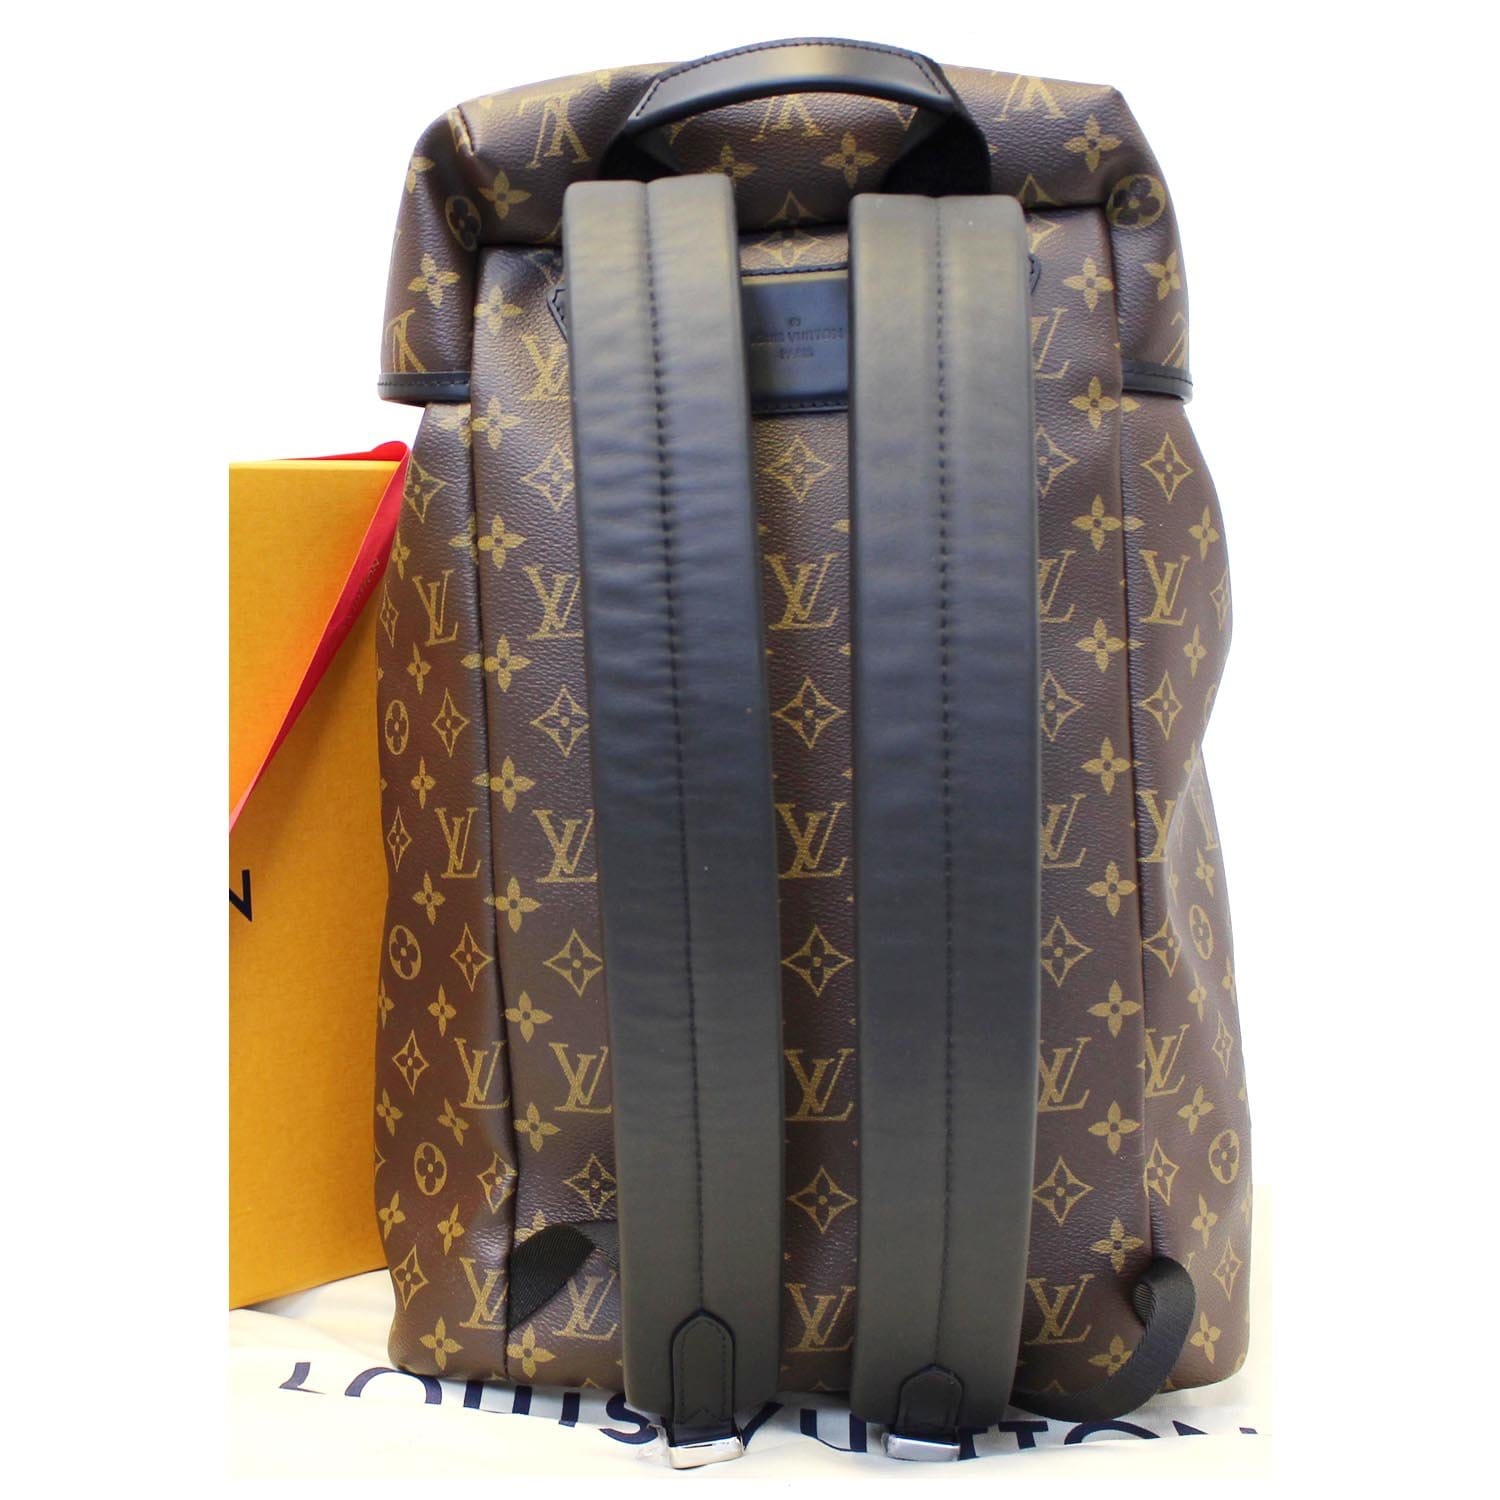 Louis Vuitton, Bags, Louis Vuitton Monogram Macassar Parc Large Backpack